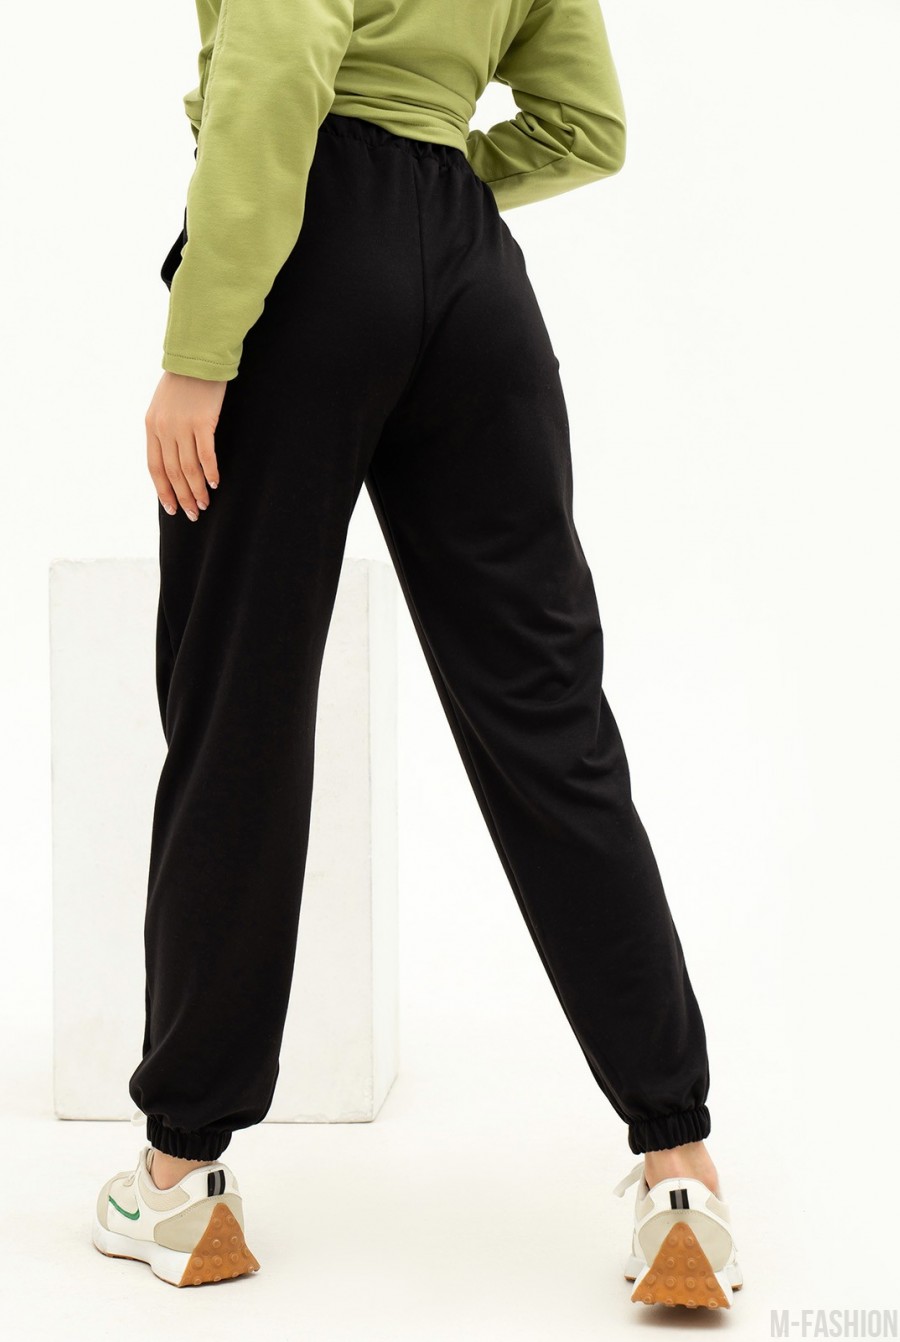 Черные трикотажные спортивные штаны модели джоггер - Фото 3